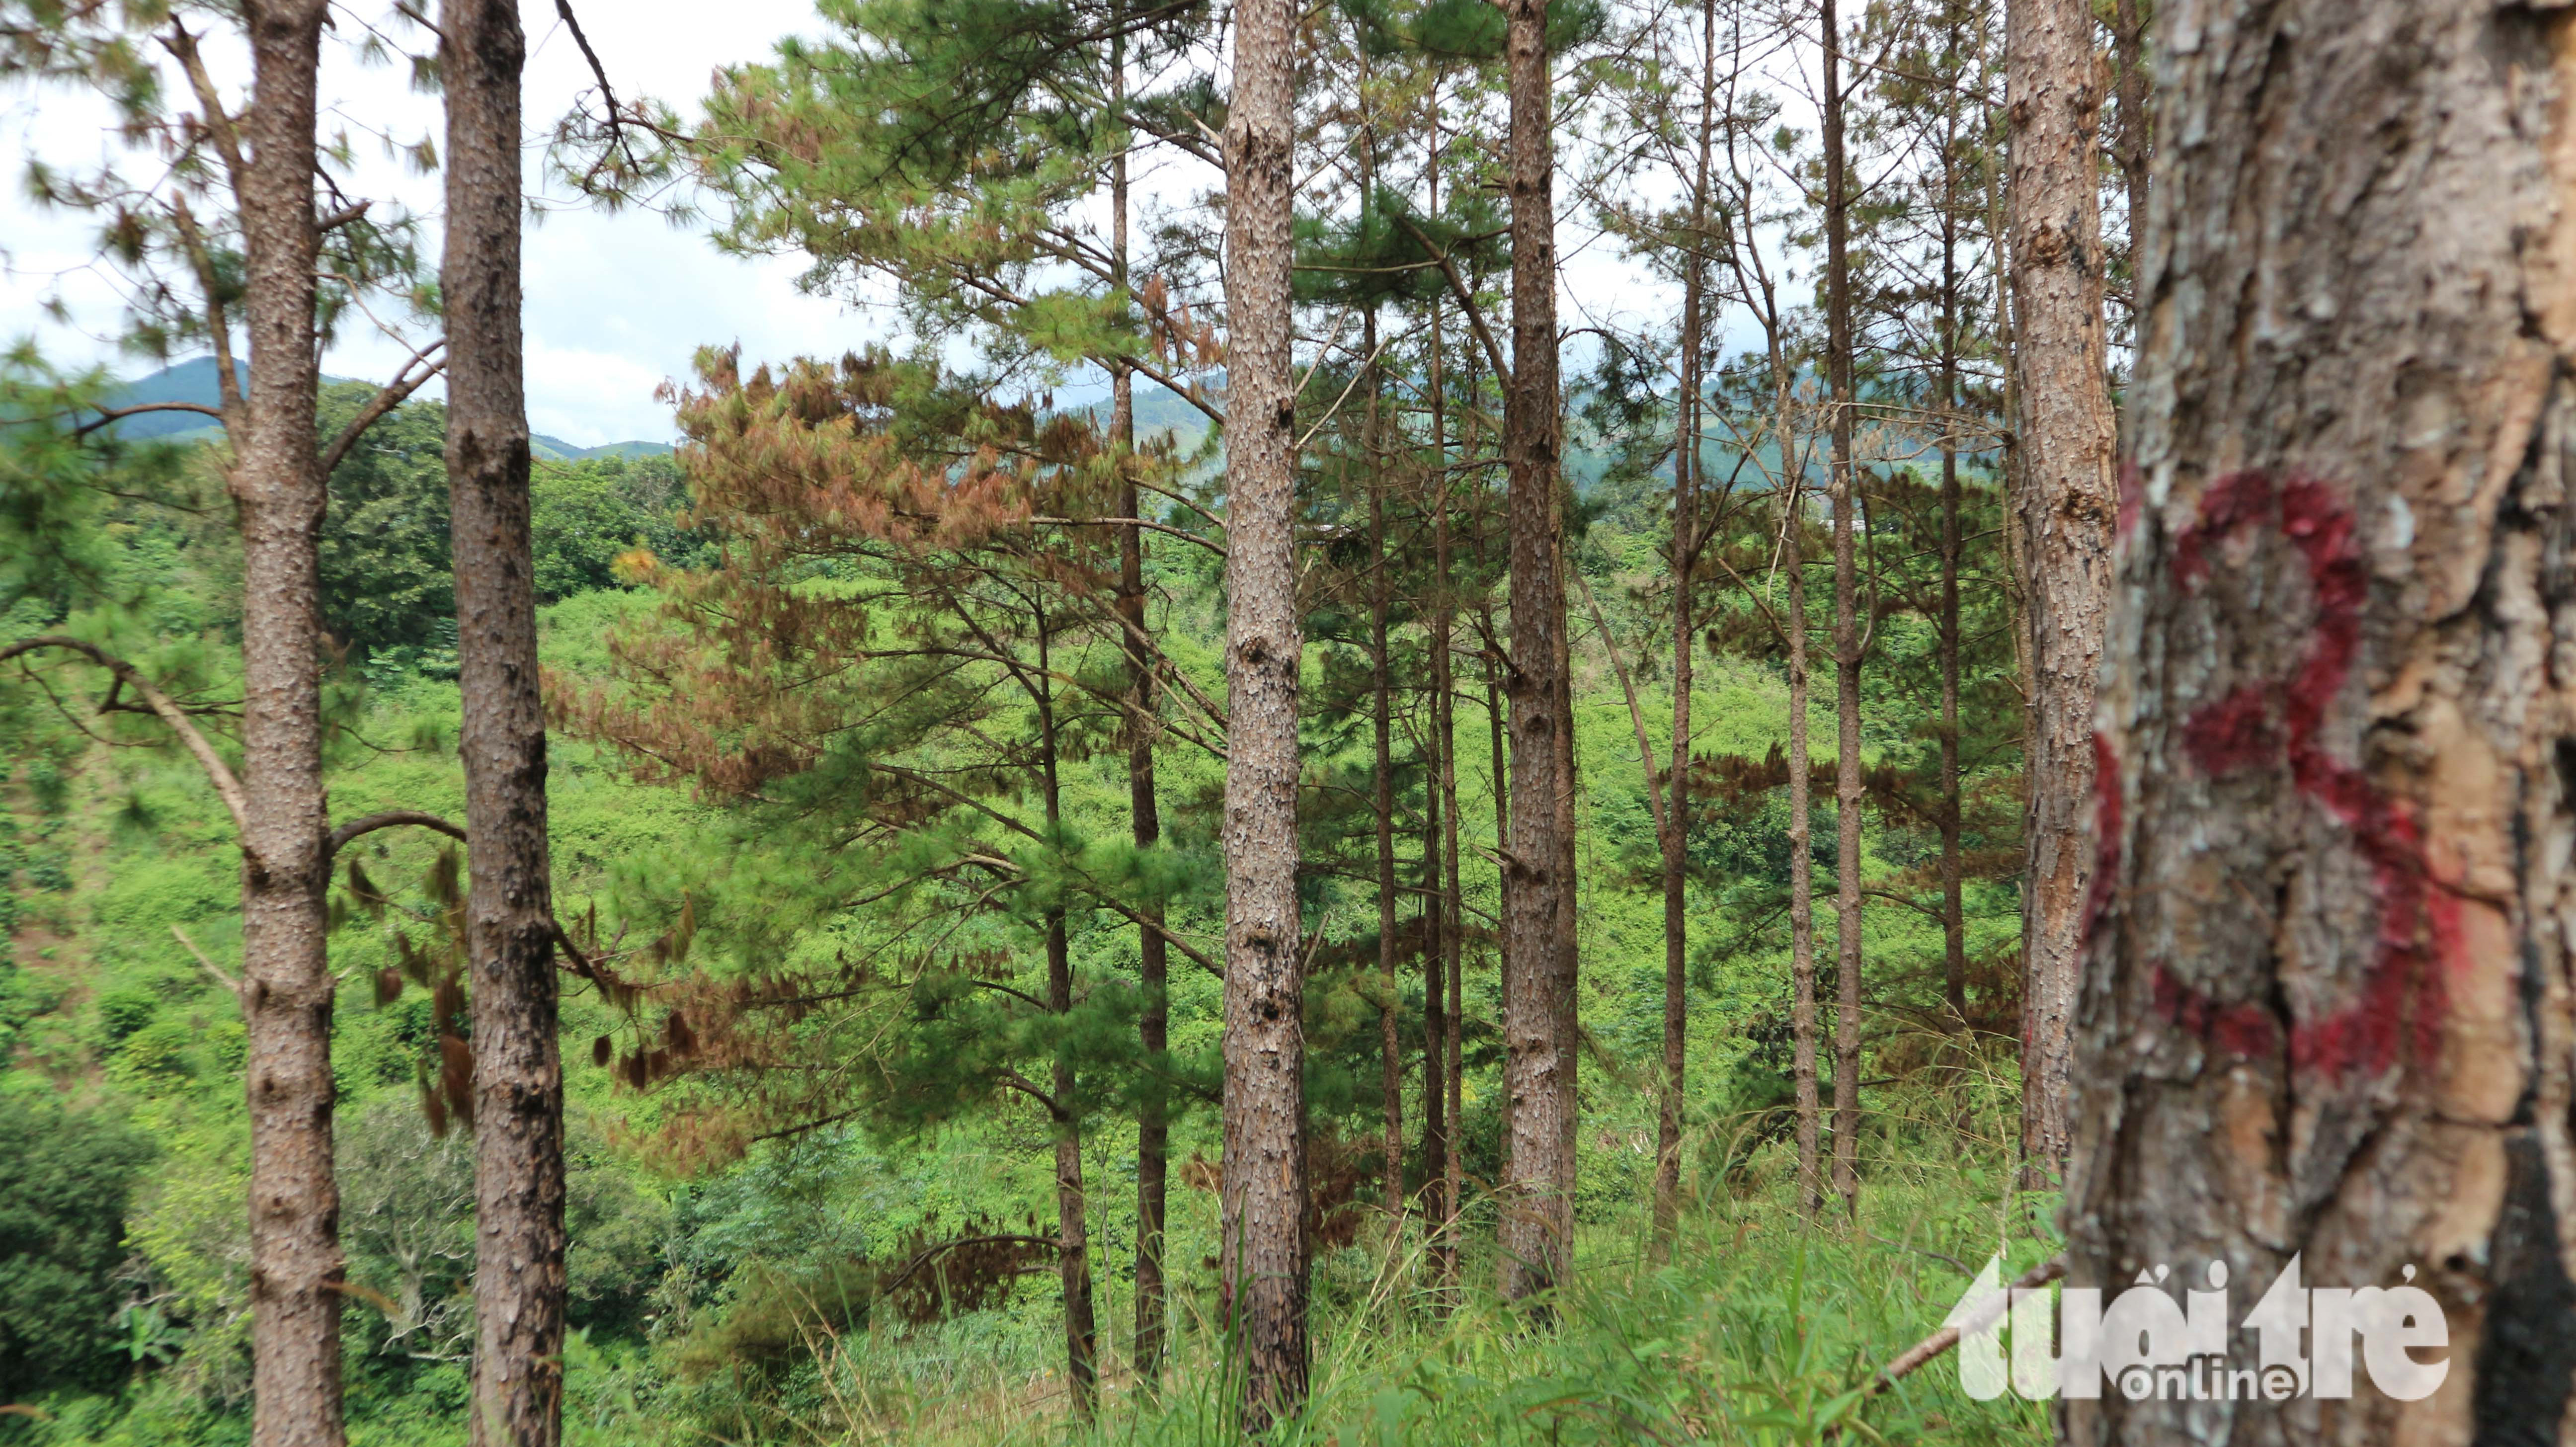 151 cây thông rừng Đà Lạt bị "đầu độc" bằng thuốc diệt cỏ